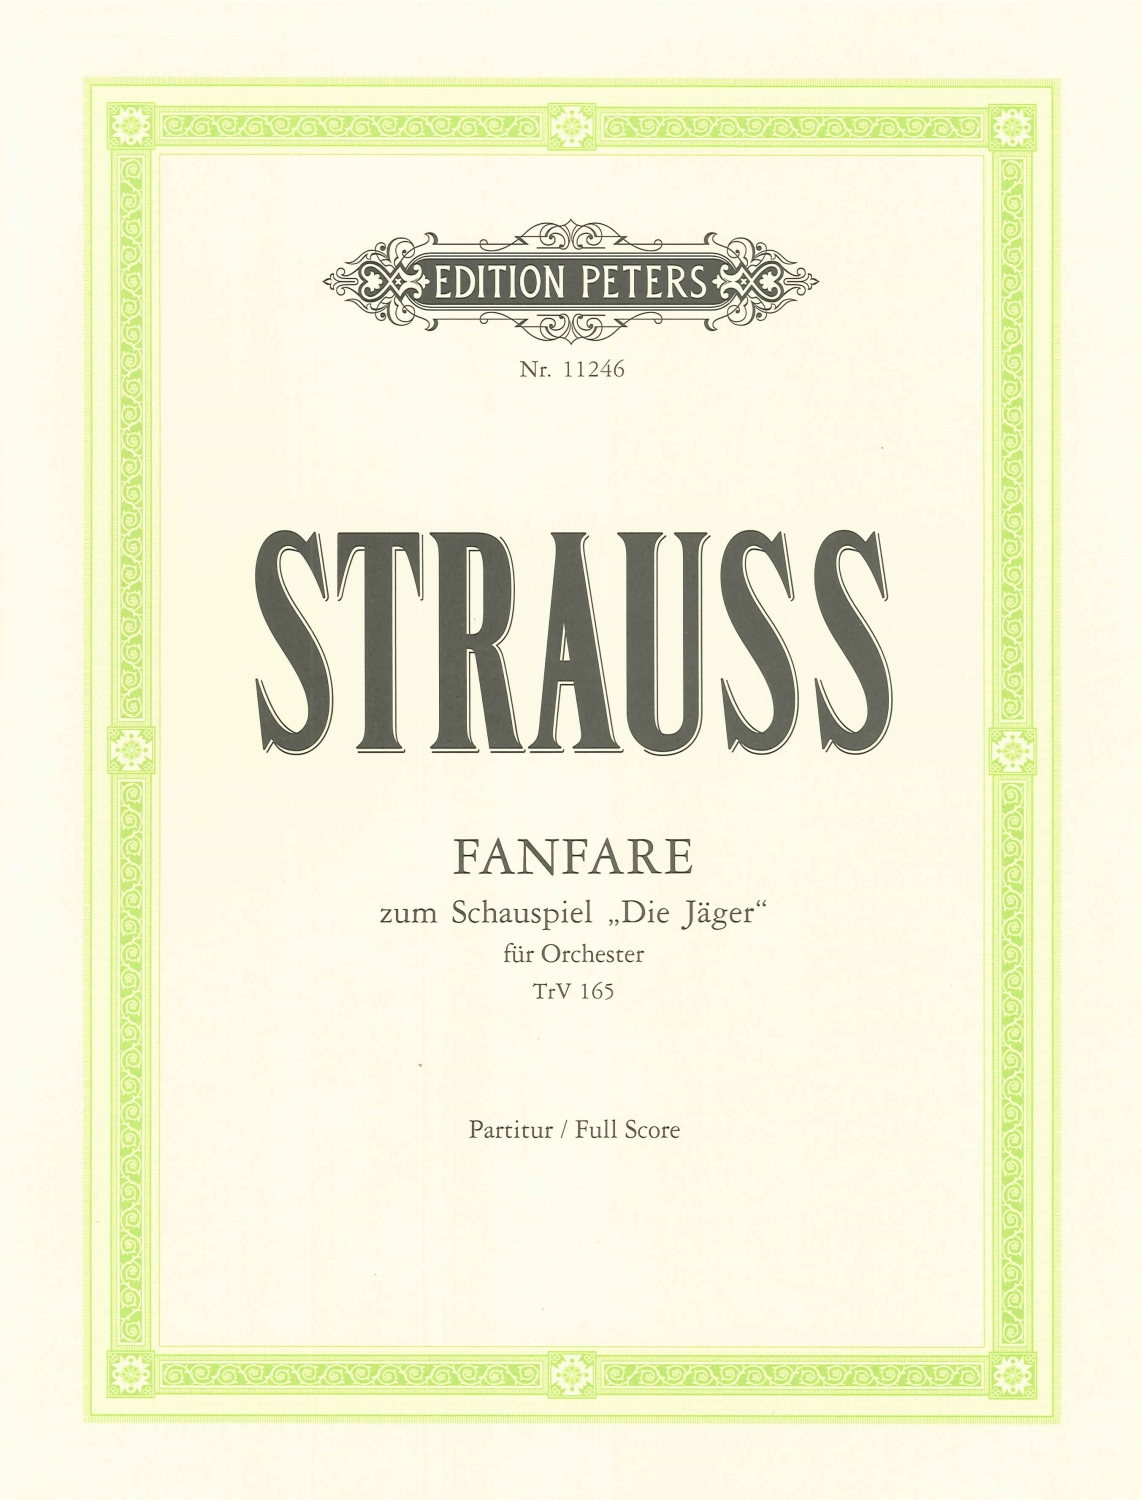 richard-strauss-fanfare-1891-orch-_partitur_-_0001.JPG